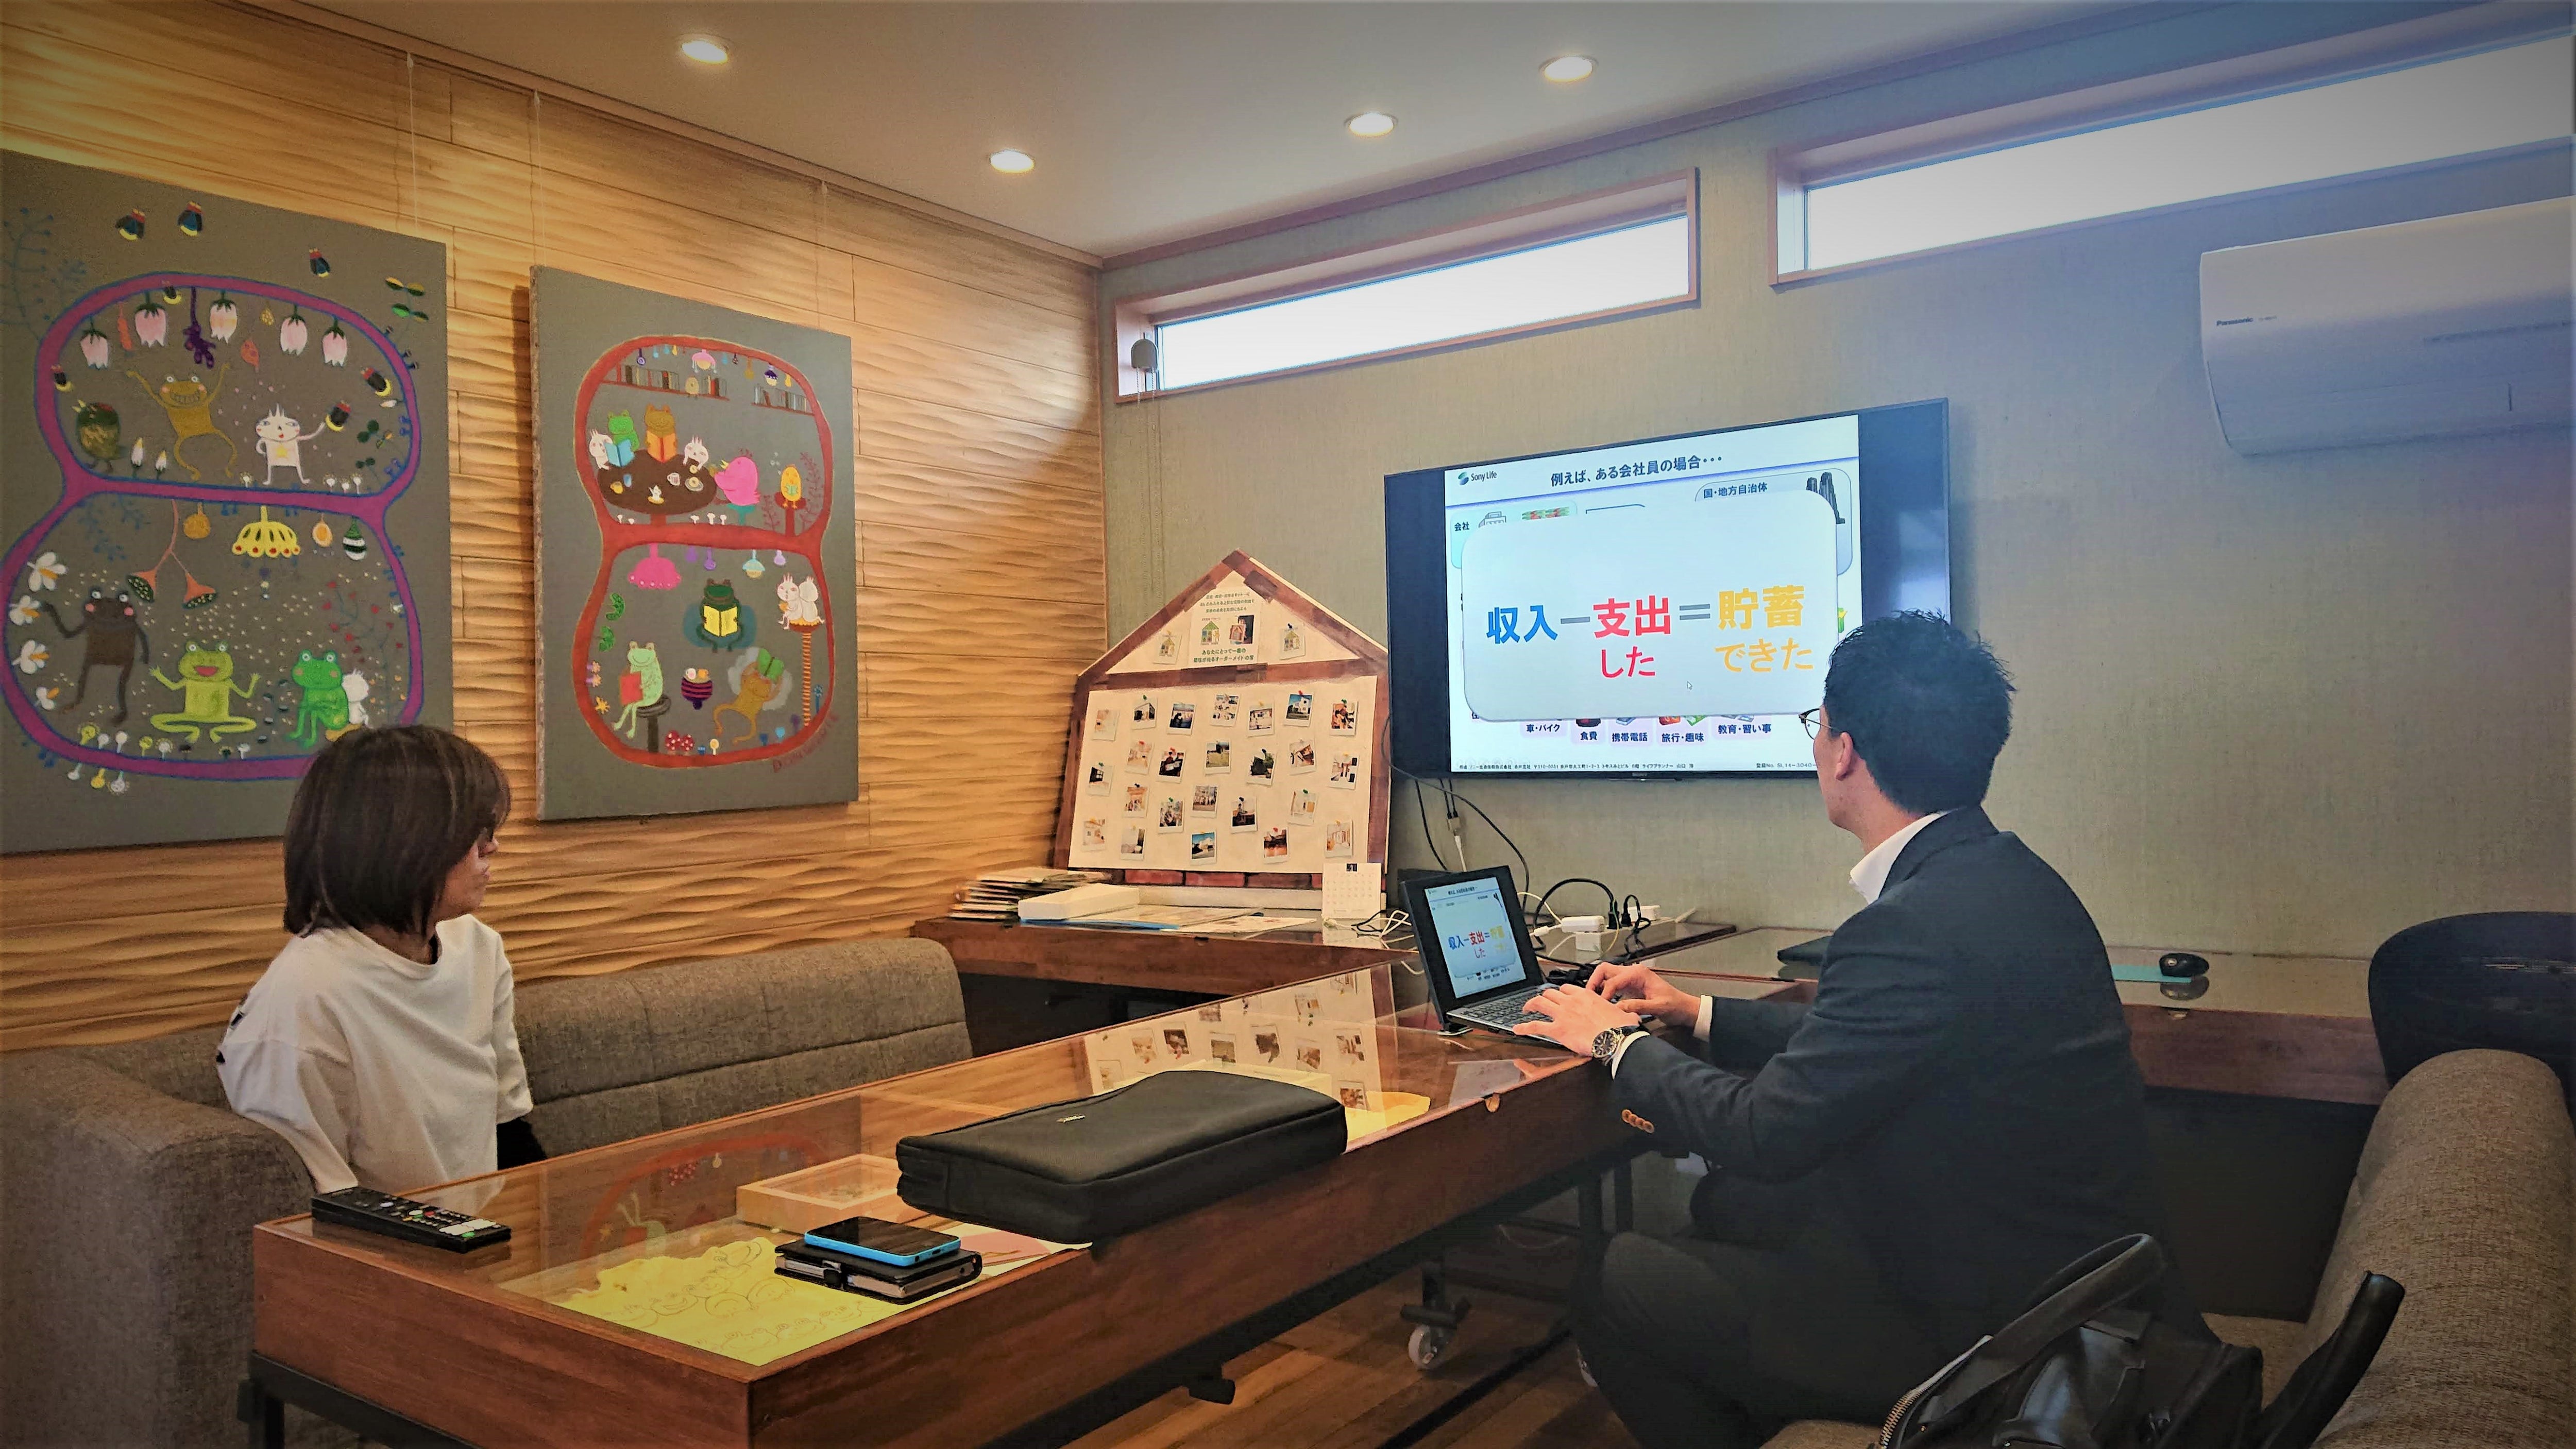 大盛況のライフプランセミナー安心のオンライン相談も可能です。茨城県水戸市でオシャレな注文住宅なら鈴木建装